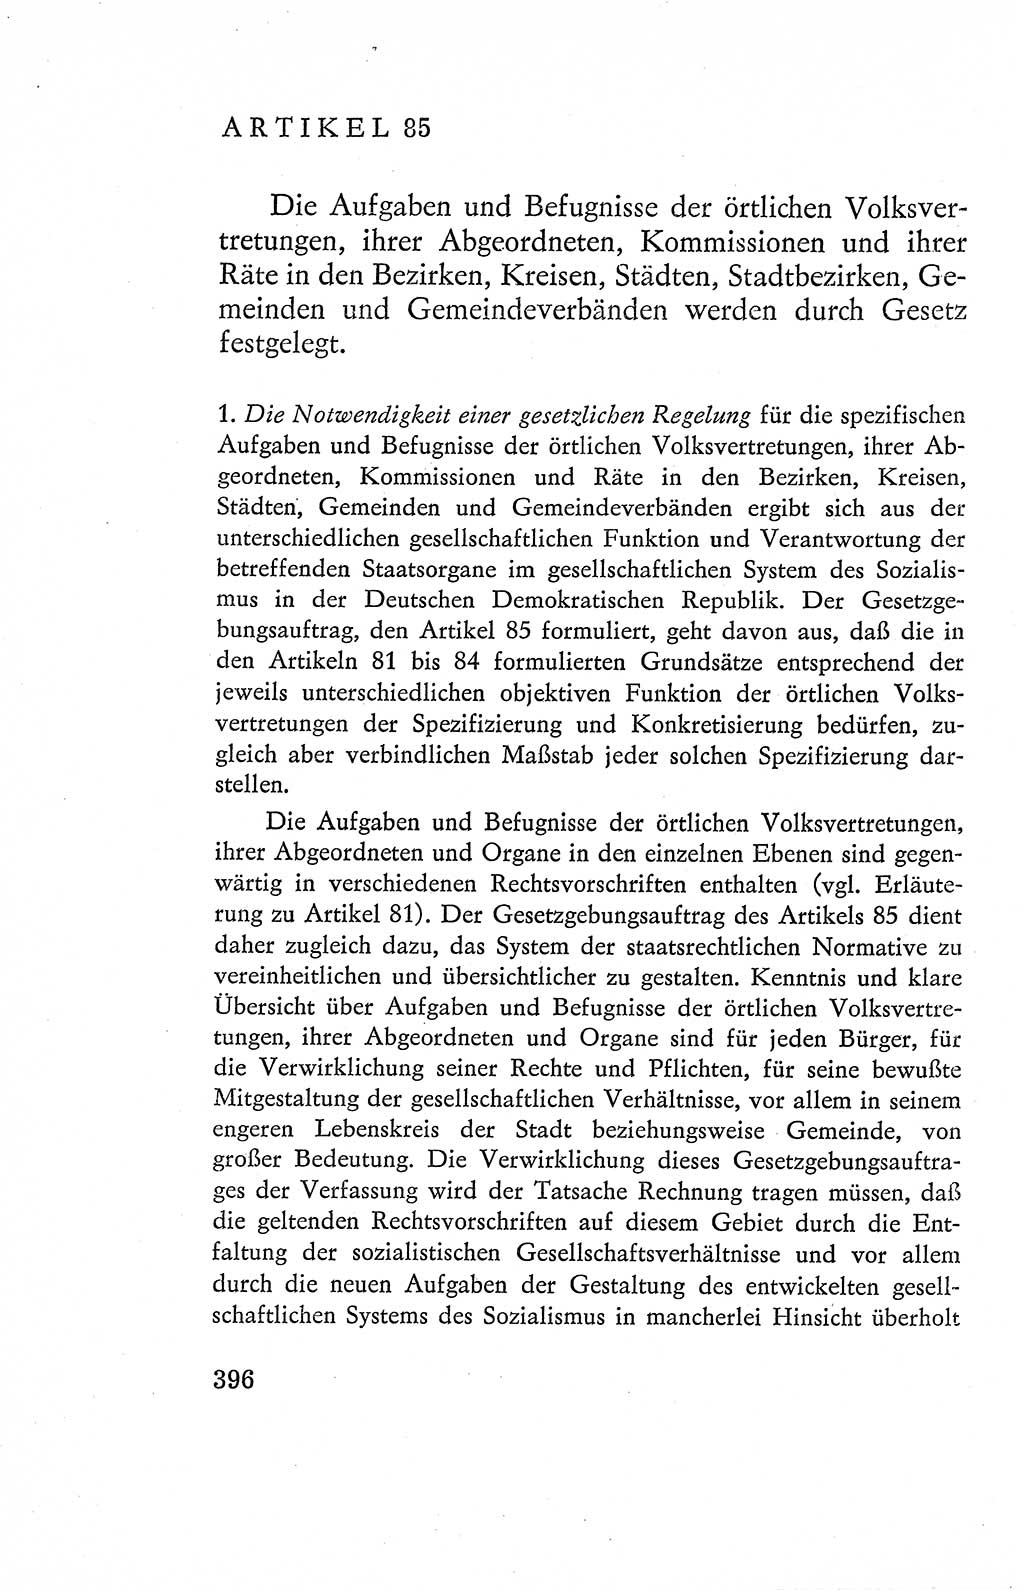 Verfassung der Deutschen Demokratischen Republik (DDR), Dokumente, Kommentar 1969, Band 2, Seite 396 (Verf. DDR Dok. Komm. 1969, Bd. 2, S. 396)